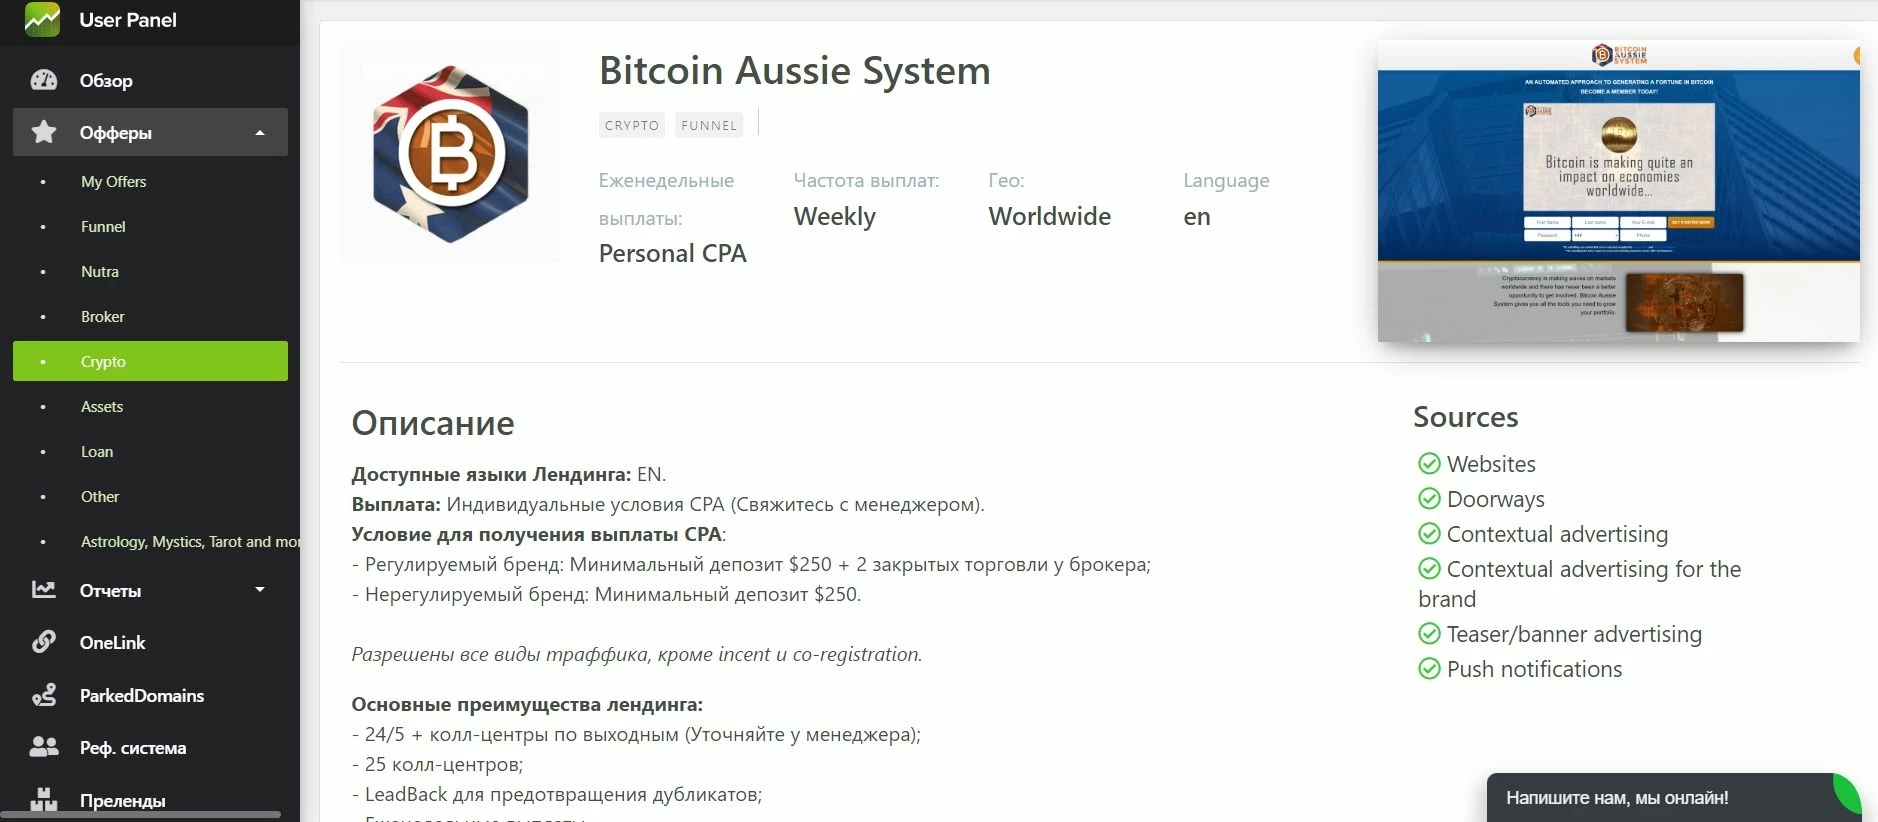 Оффер Bitcoin Aussie System